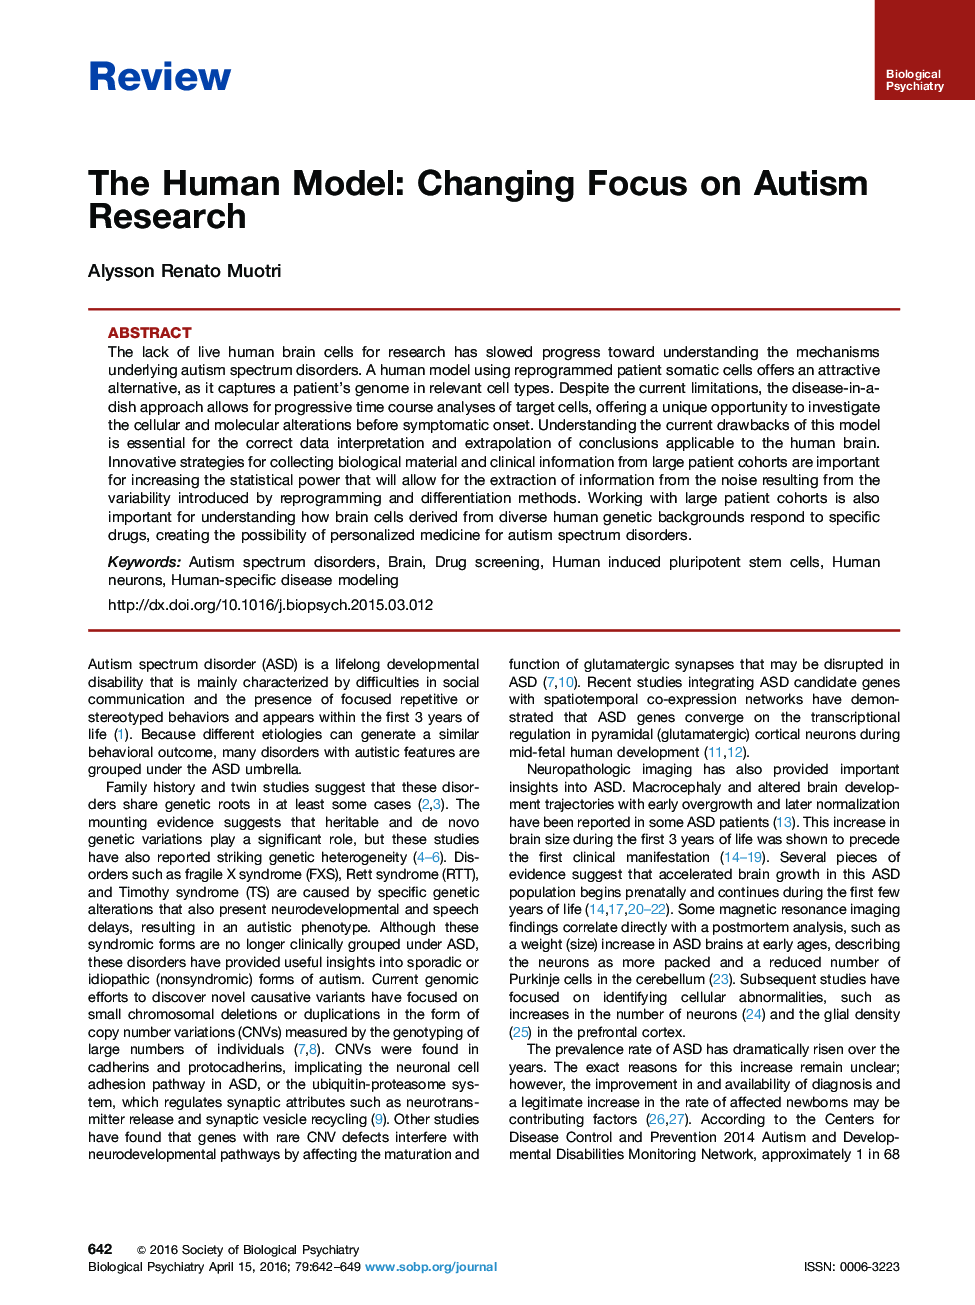 مدل انسان: تغییر تمرکز بر تحقیق اوتیسم 